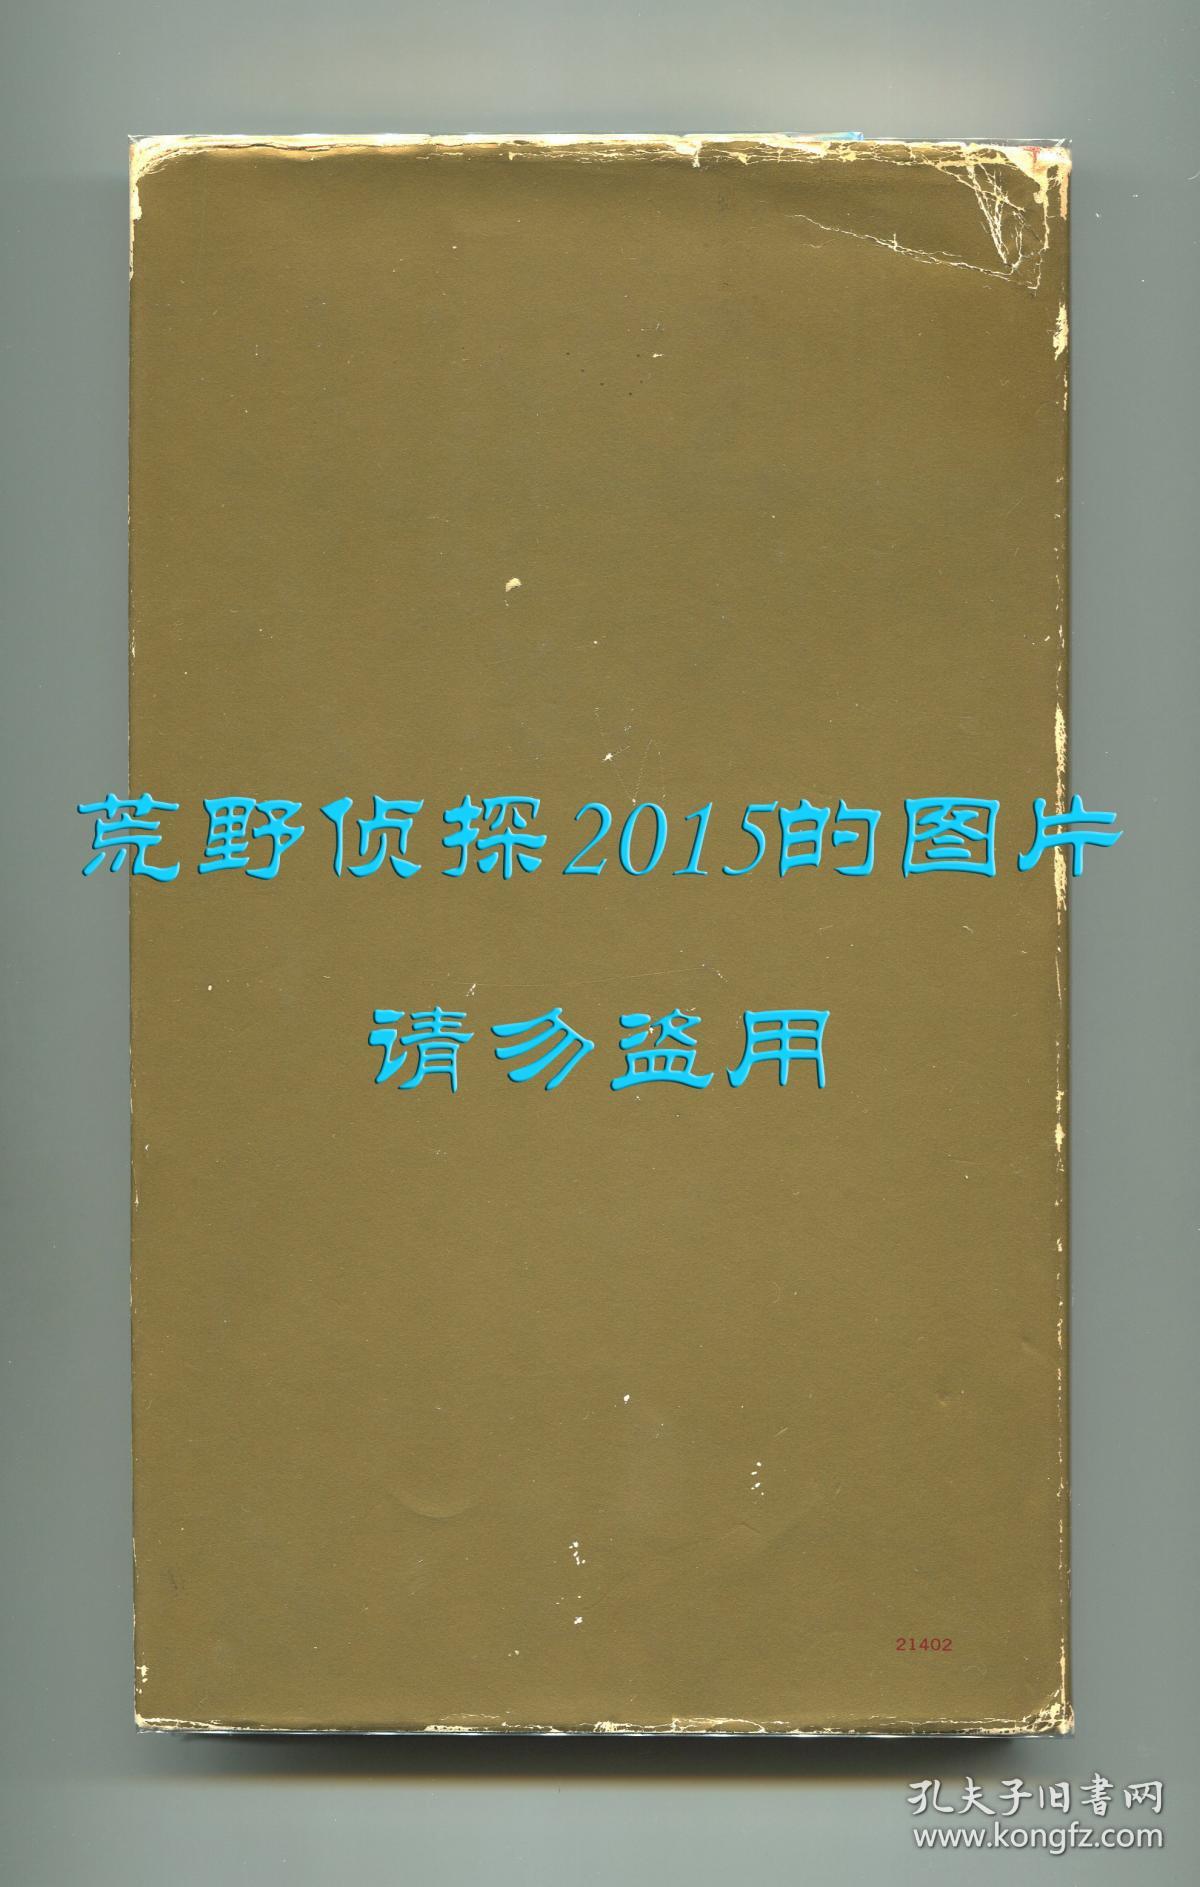 《毛泽东诗词》（Poems of Mao Tse-Tung）英文译本，聂华苓、保罗·安格尔翻译，1972年初版精装